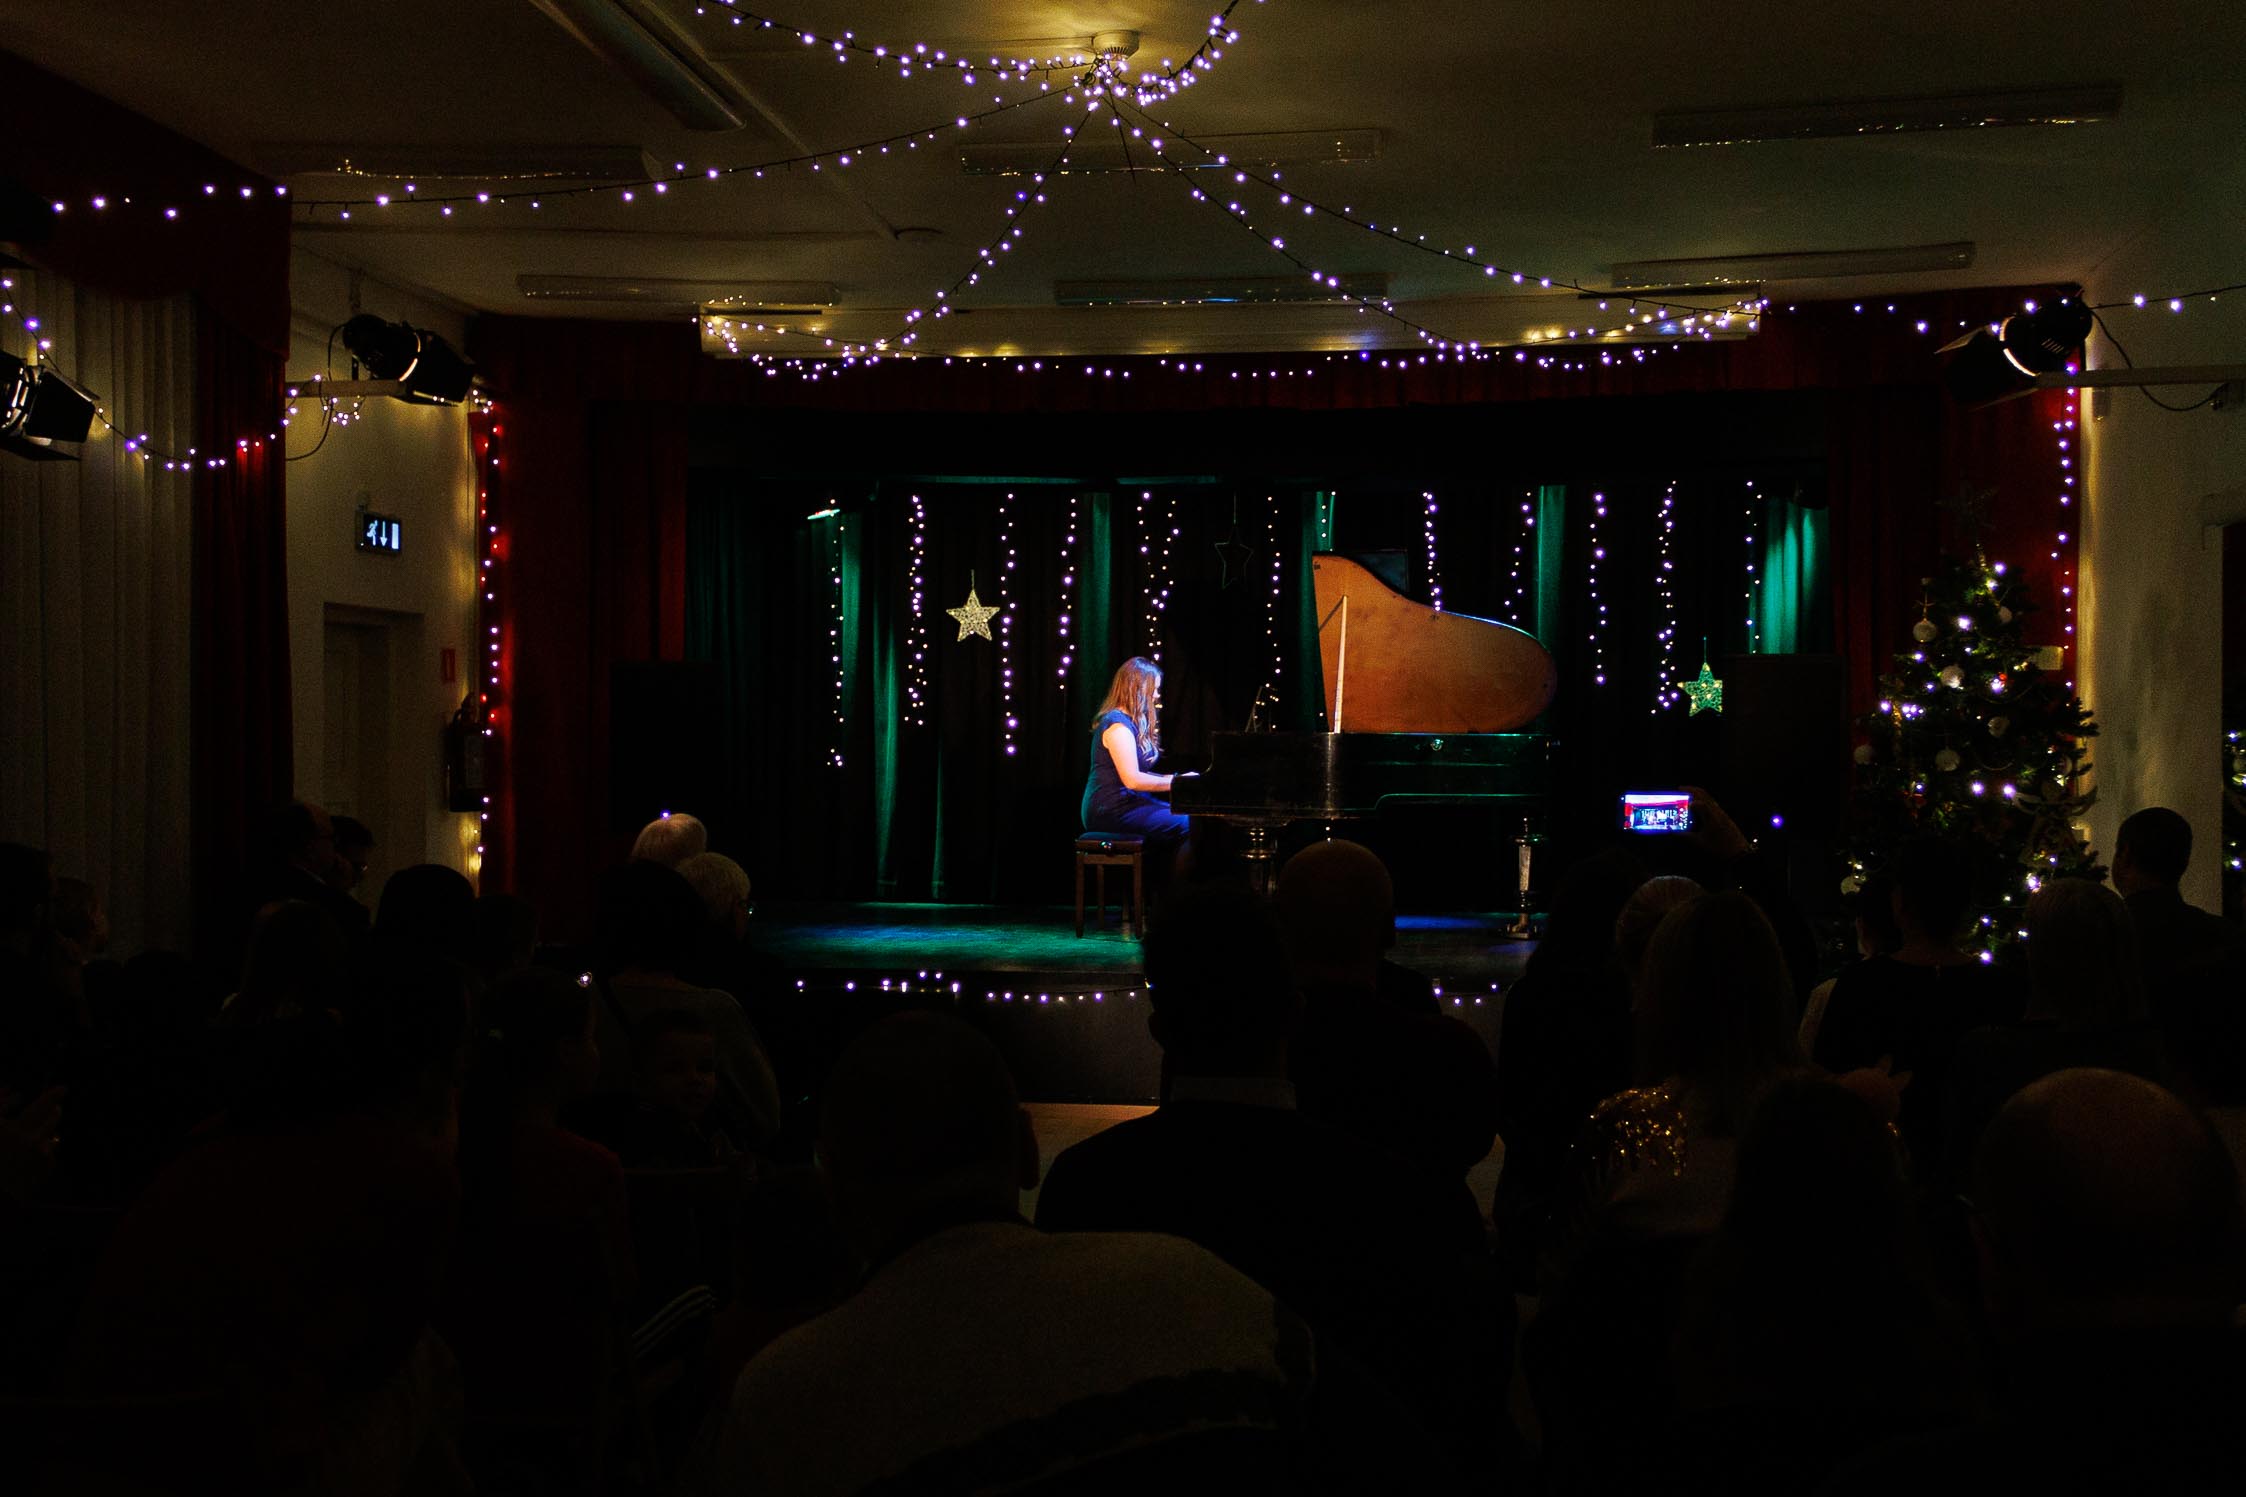 kolorowa scena, dziewczyna gra na fortepianie, w tle oświetlona scena, scena udekorowana świątecznie, szeroki kadr, widać publiczność